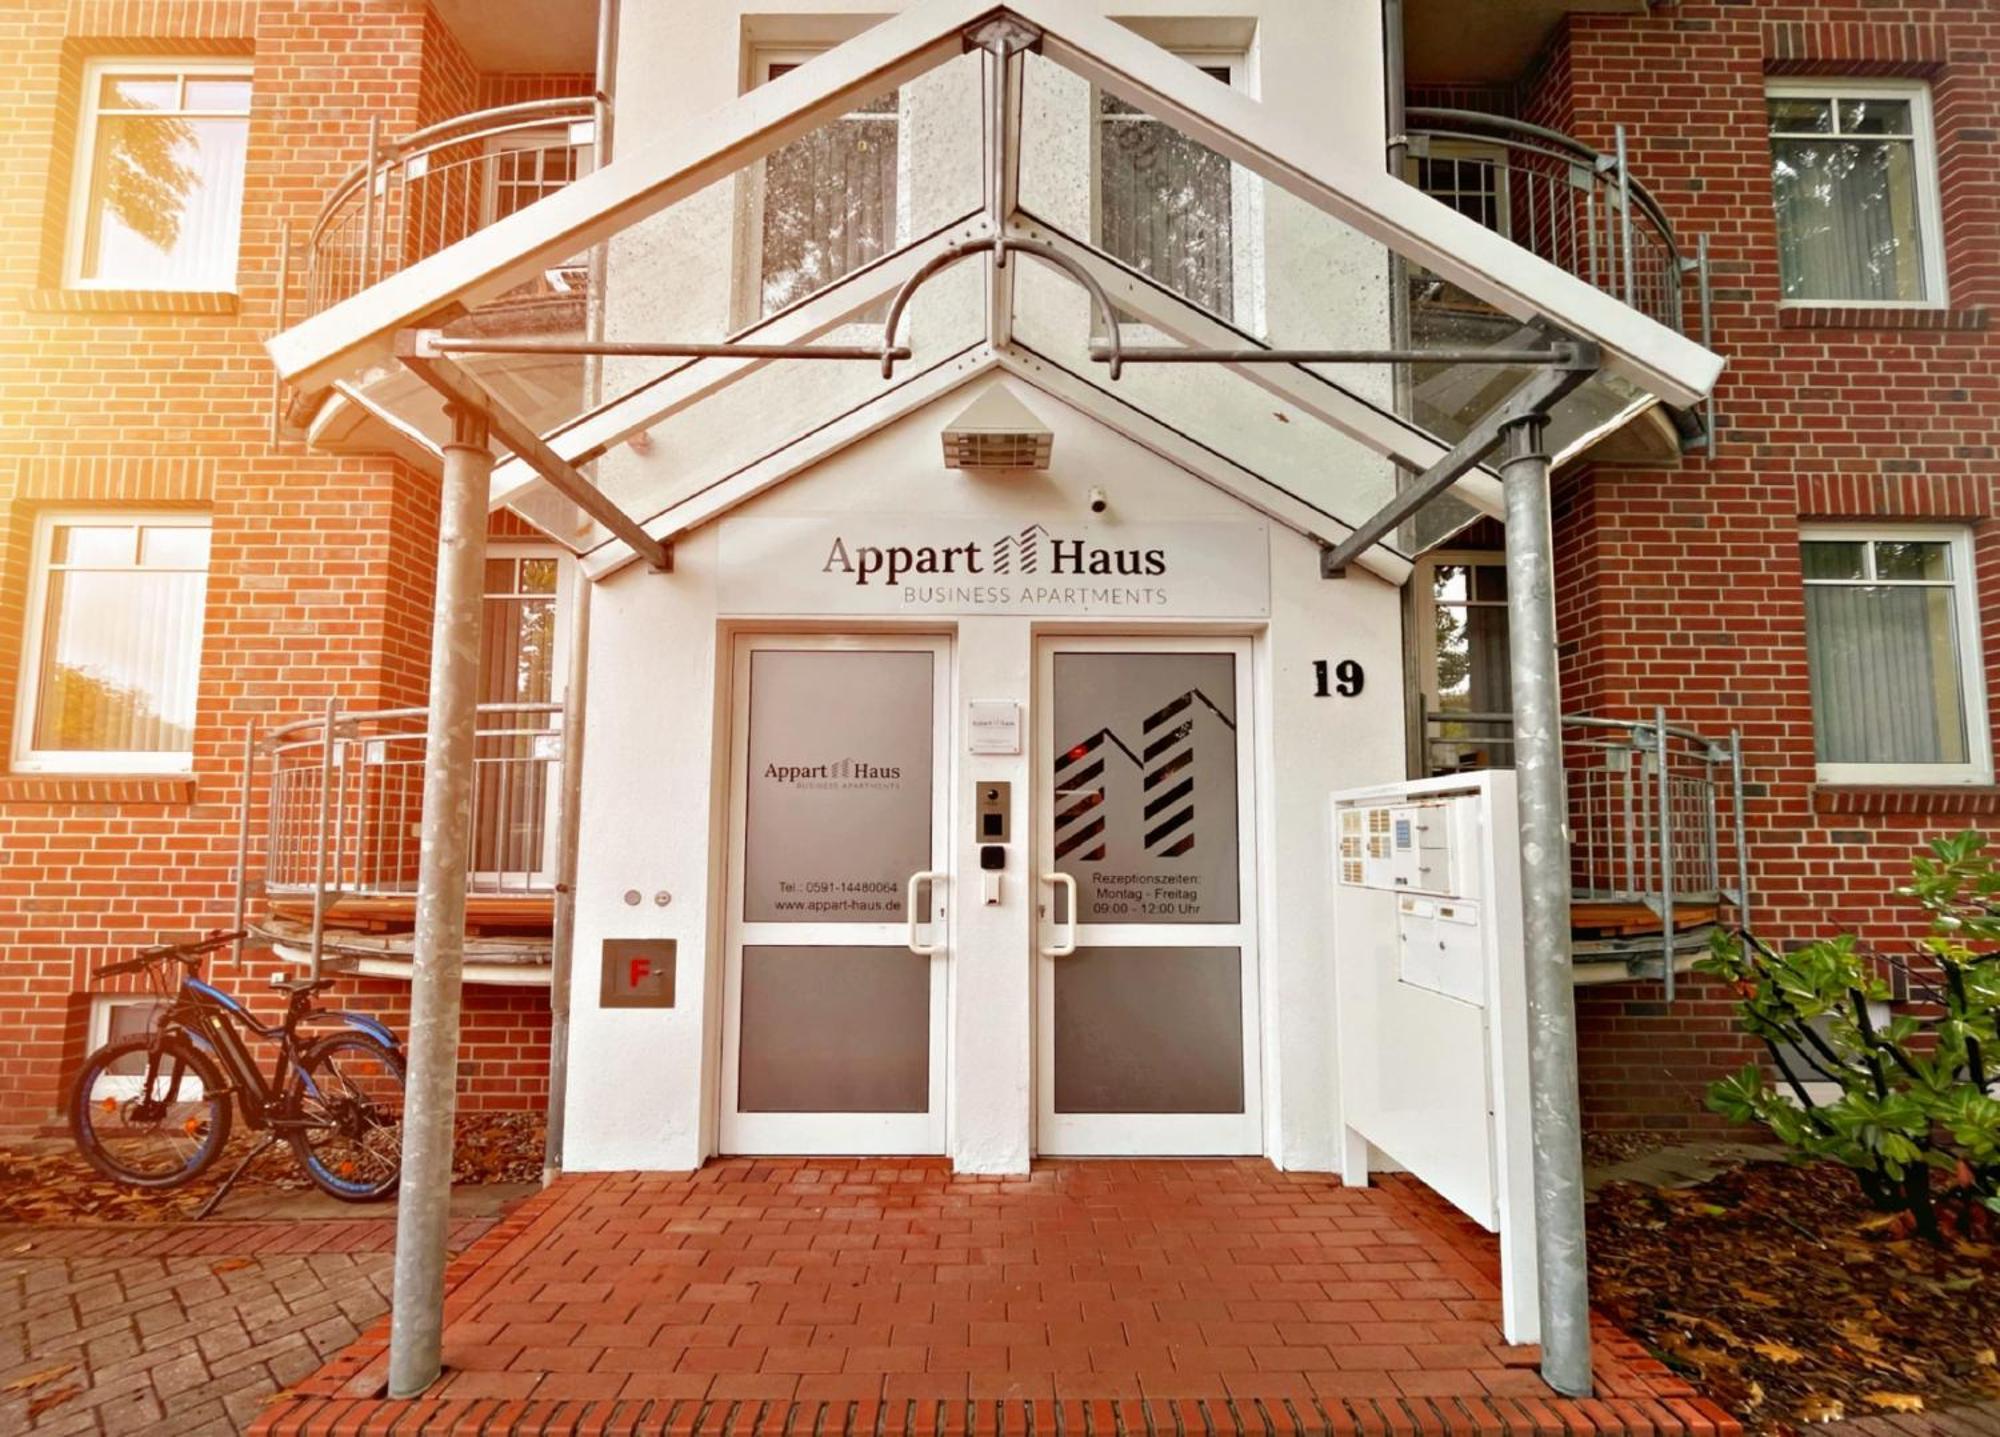 Appart-Haus Business Apartments リンゲン エクステリア 写真